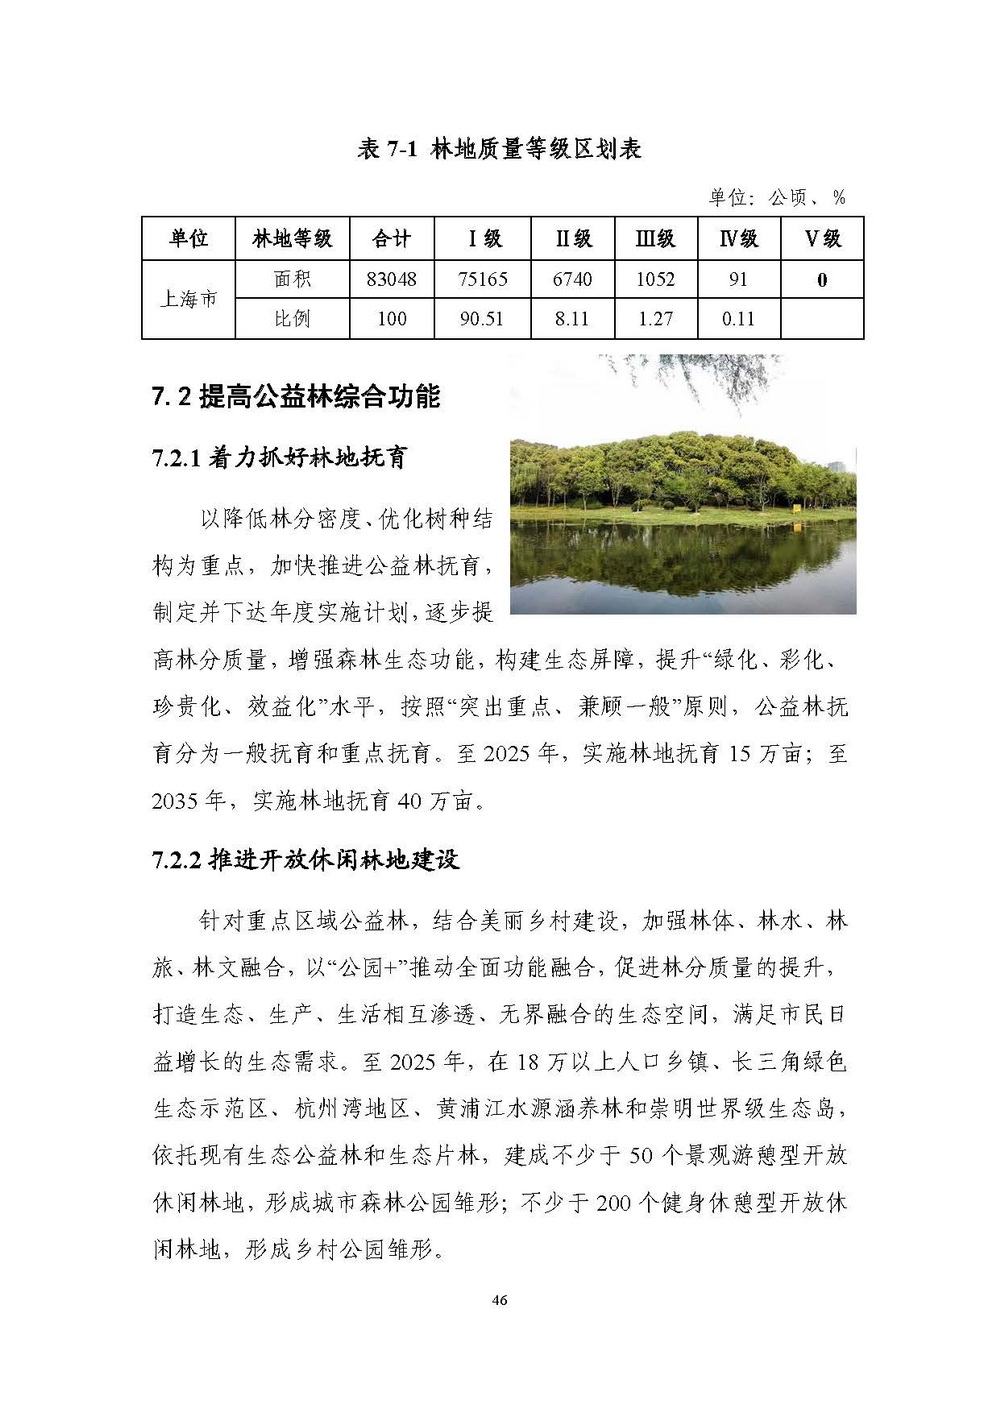 上海市森林和林地保护利用规划文本 公开稿 附图_页面_49.jpg